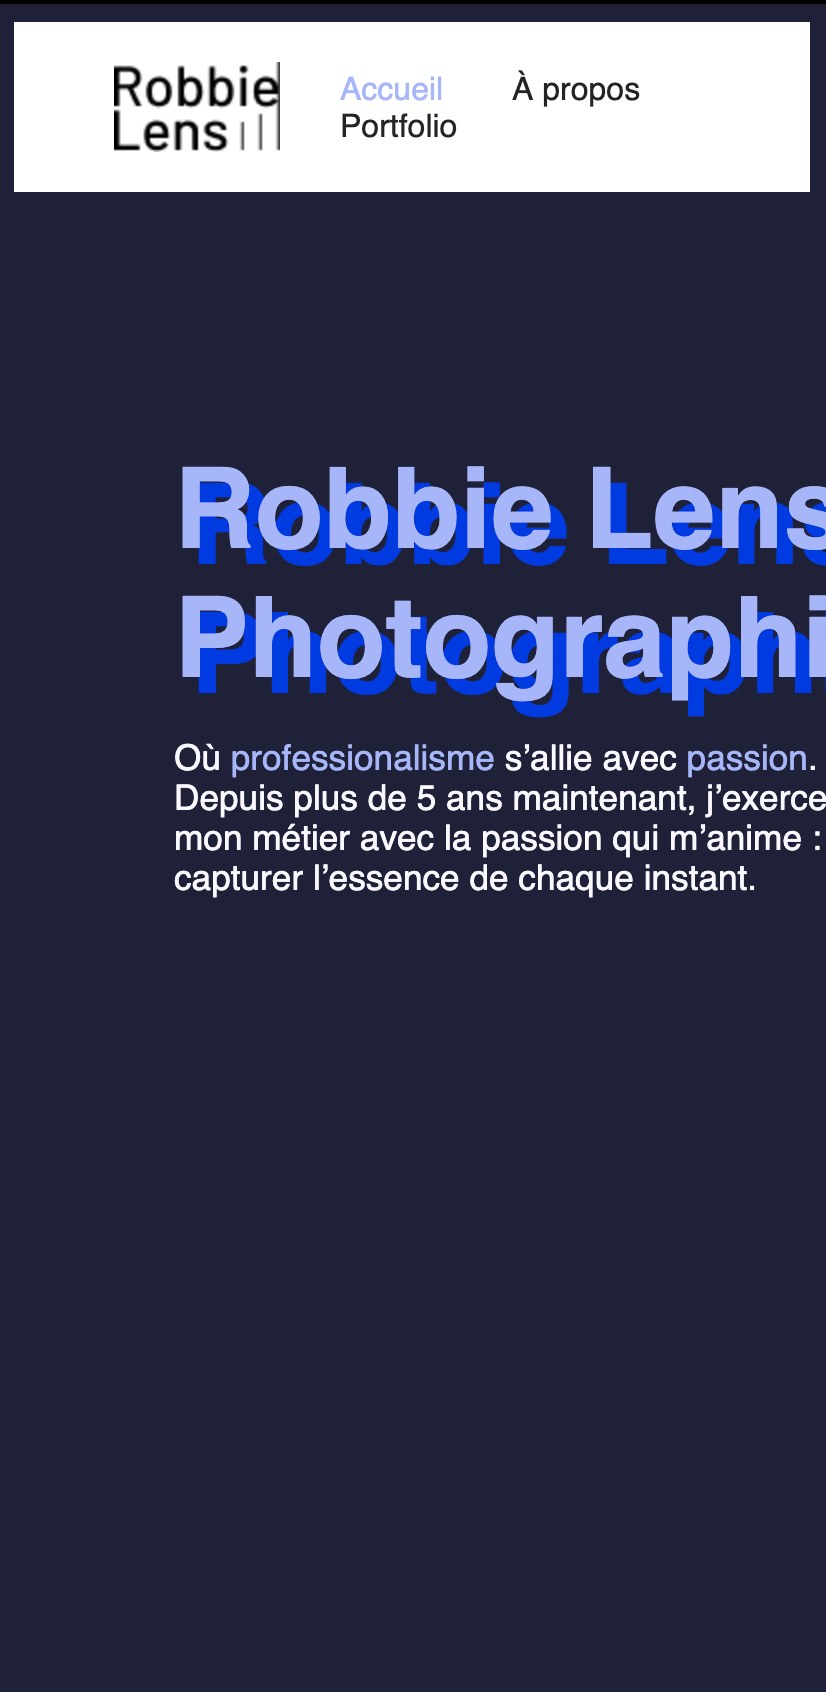 En format mobile, la page de Robbie Lens n'est pas centrée, on ne peut pas lire tout son contenu, qui n'est pas centré ni redimensionné.